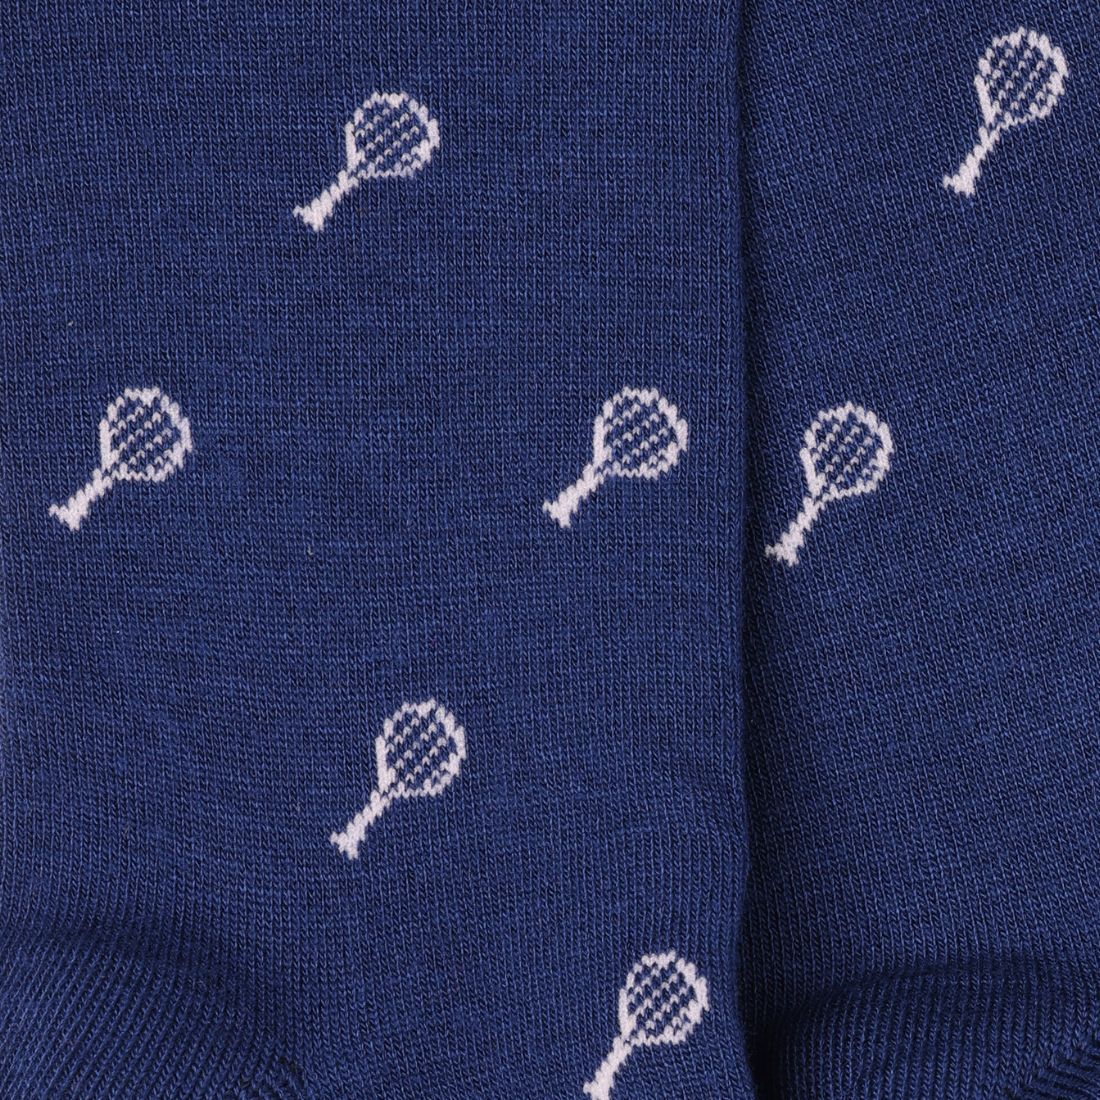 Tennis Racquet Bamboo Socks